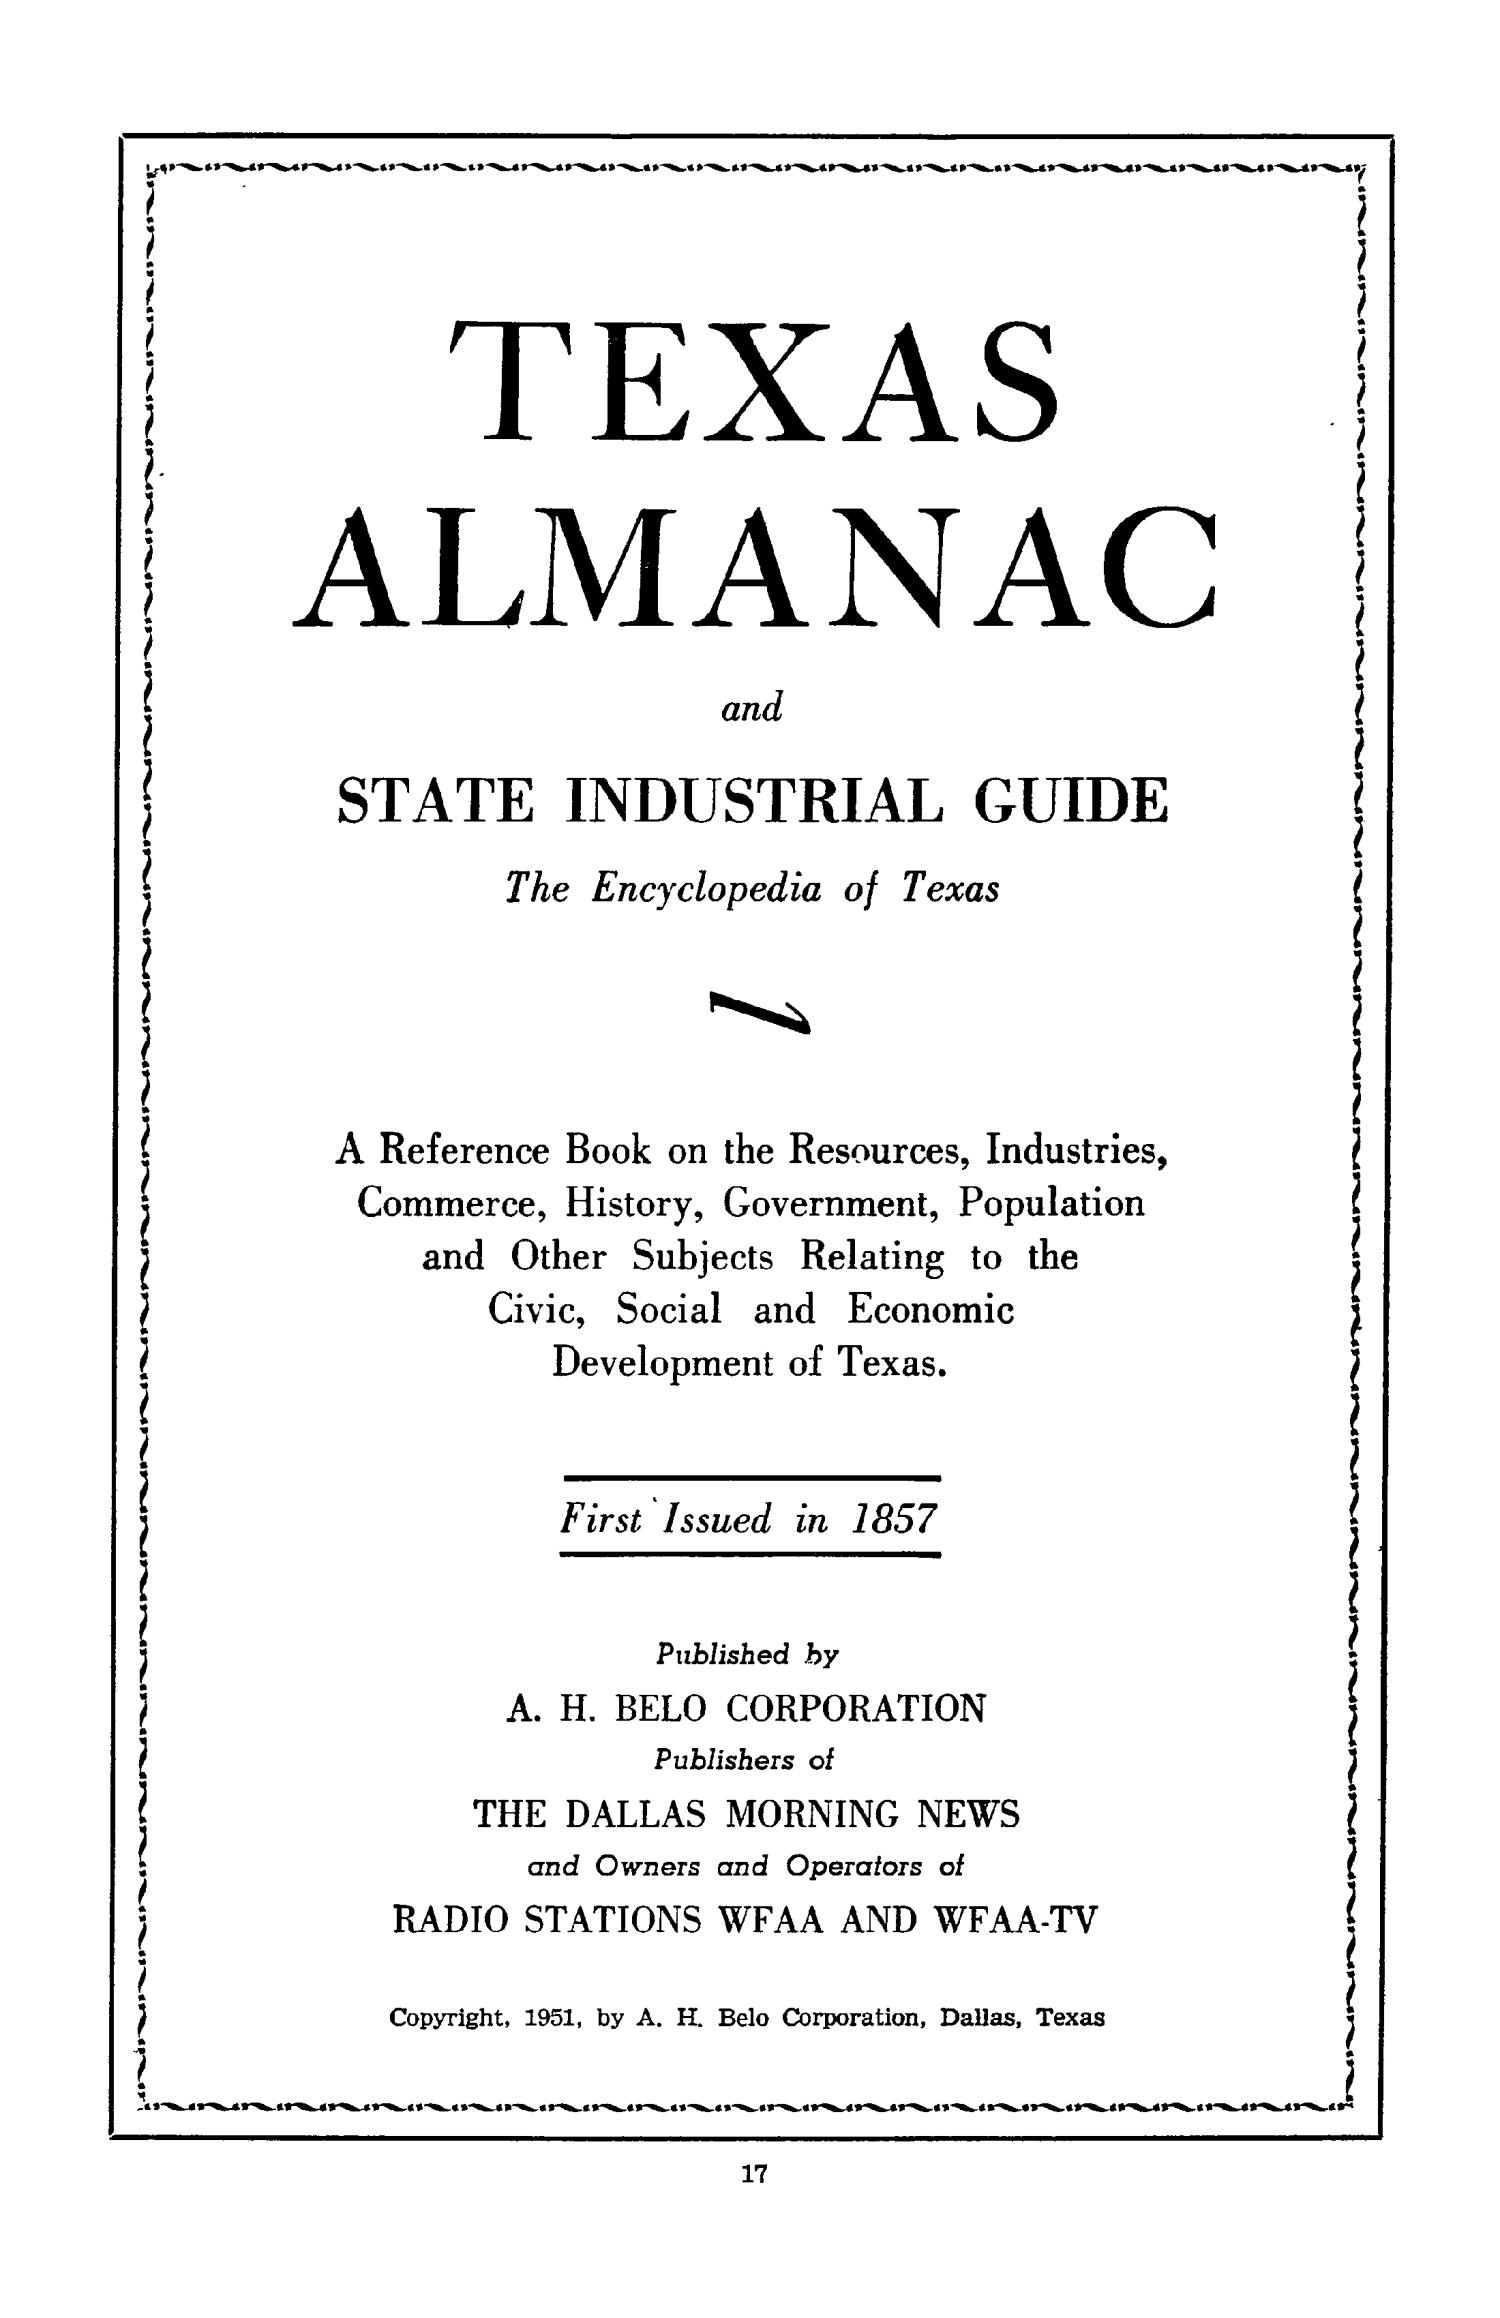 Texas Almanac, 1952-1953
                                                
                                                    17
                                                